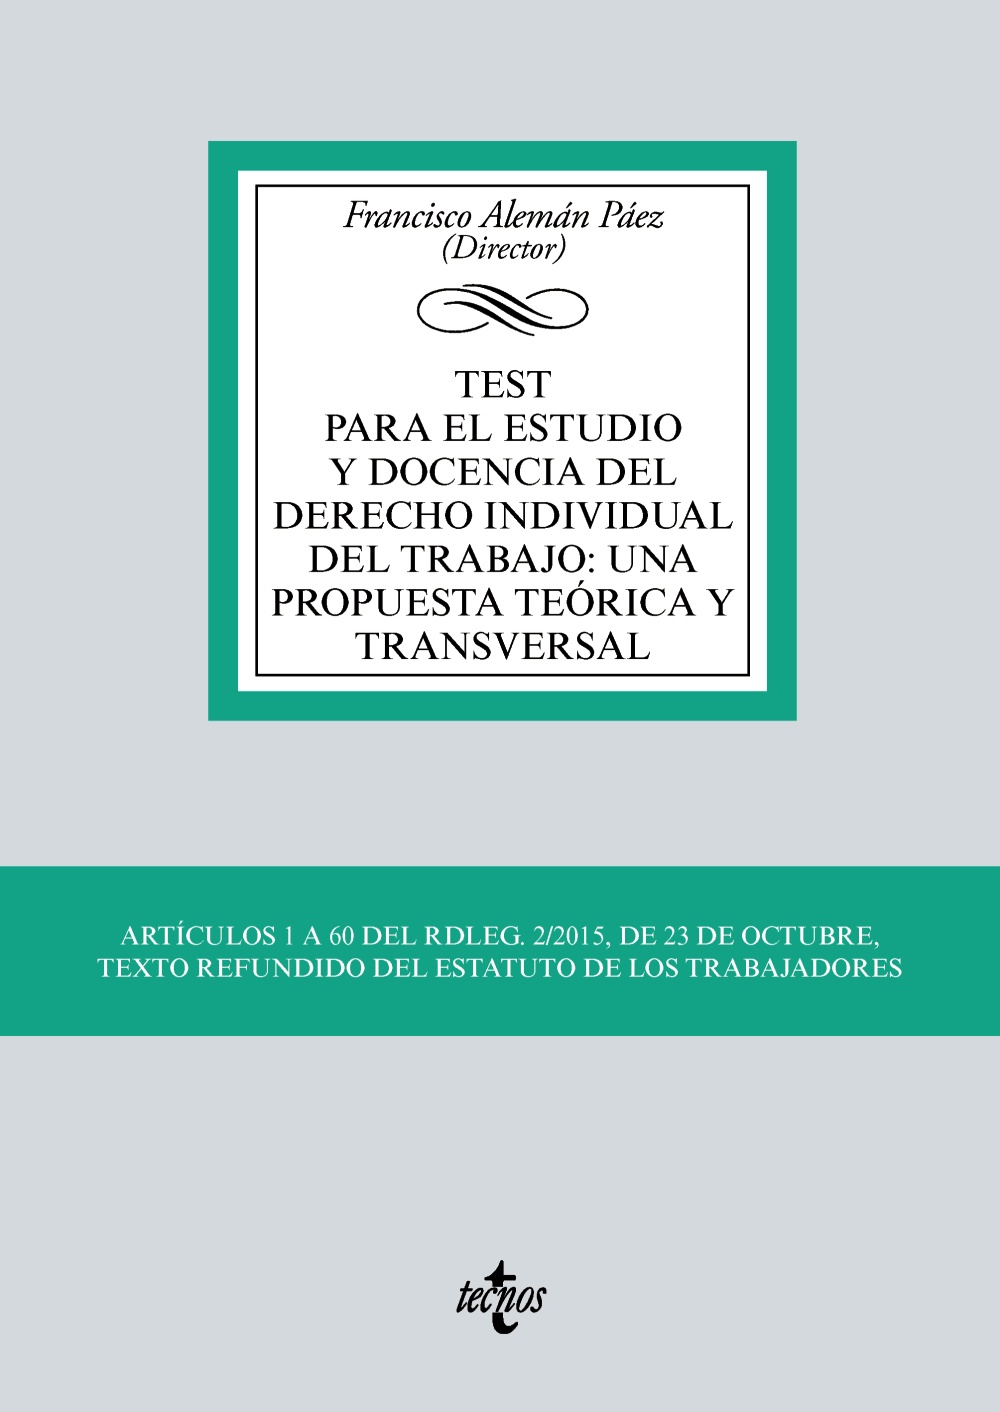 Test para el estudio y docencia del Derecho individual del trabajo: una propuesta teórica y transversal